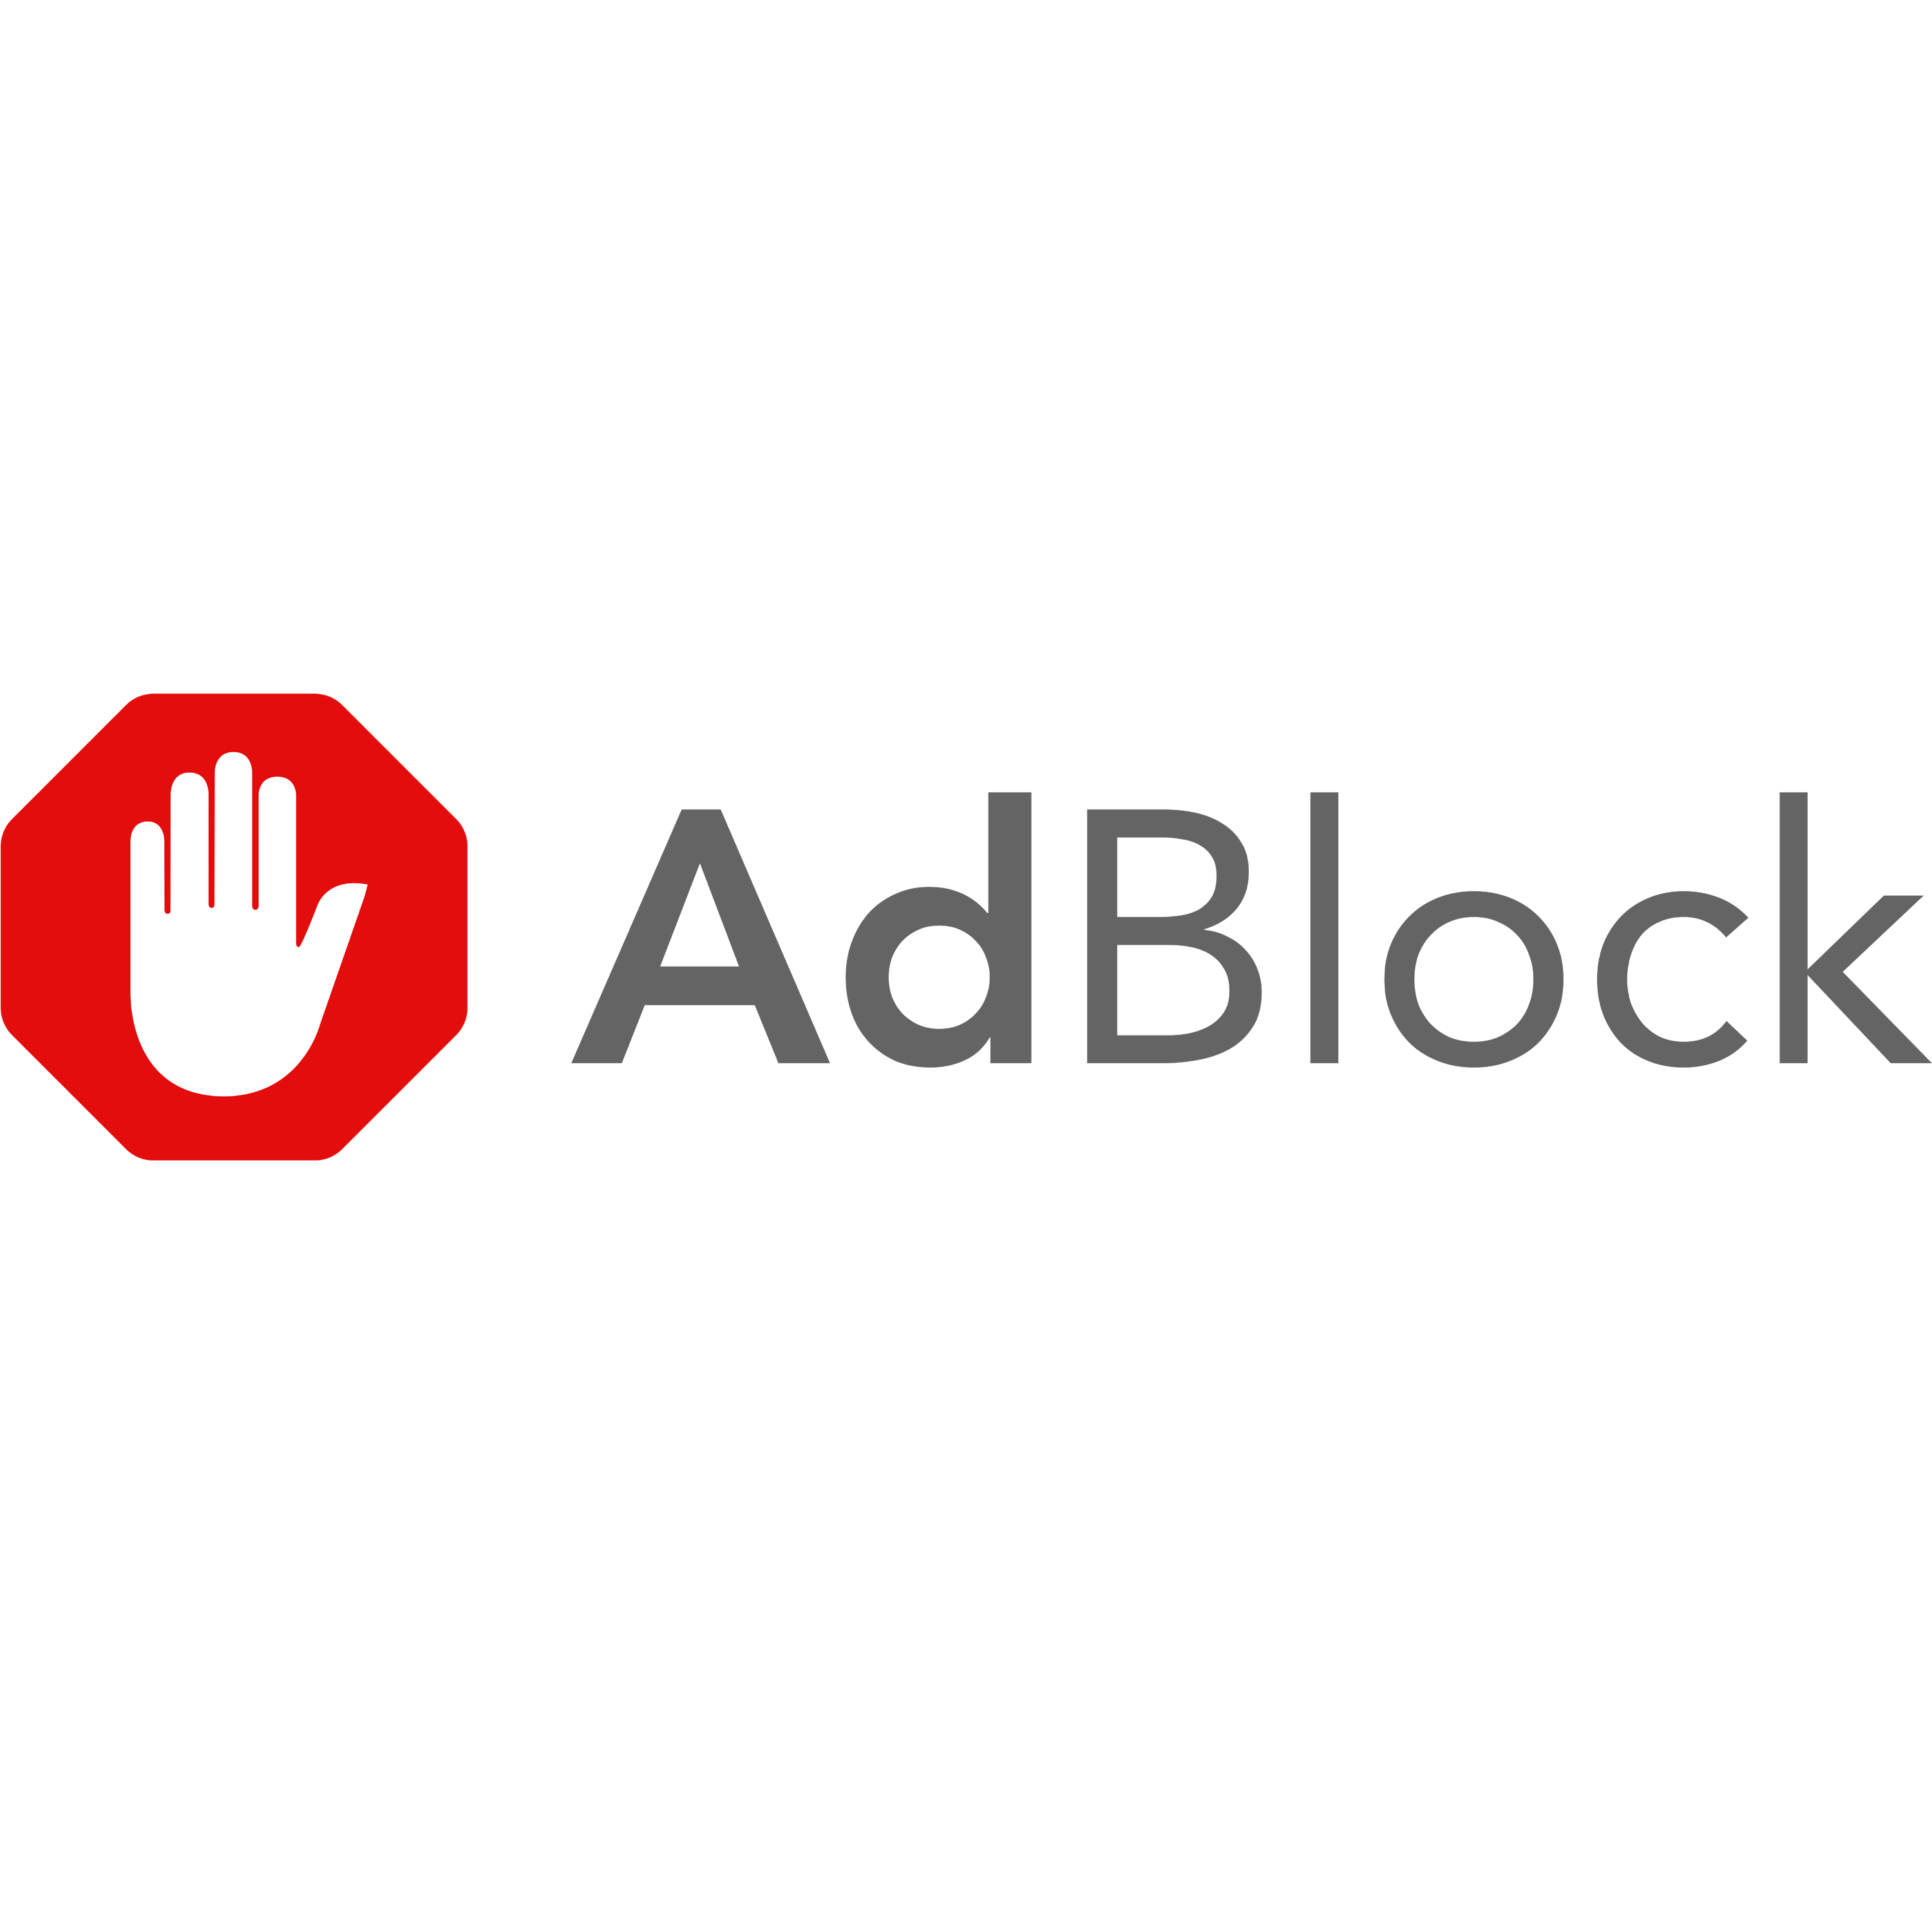 Adblock Logo Transparent Photo